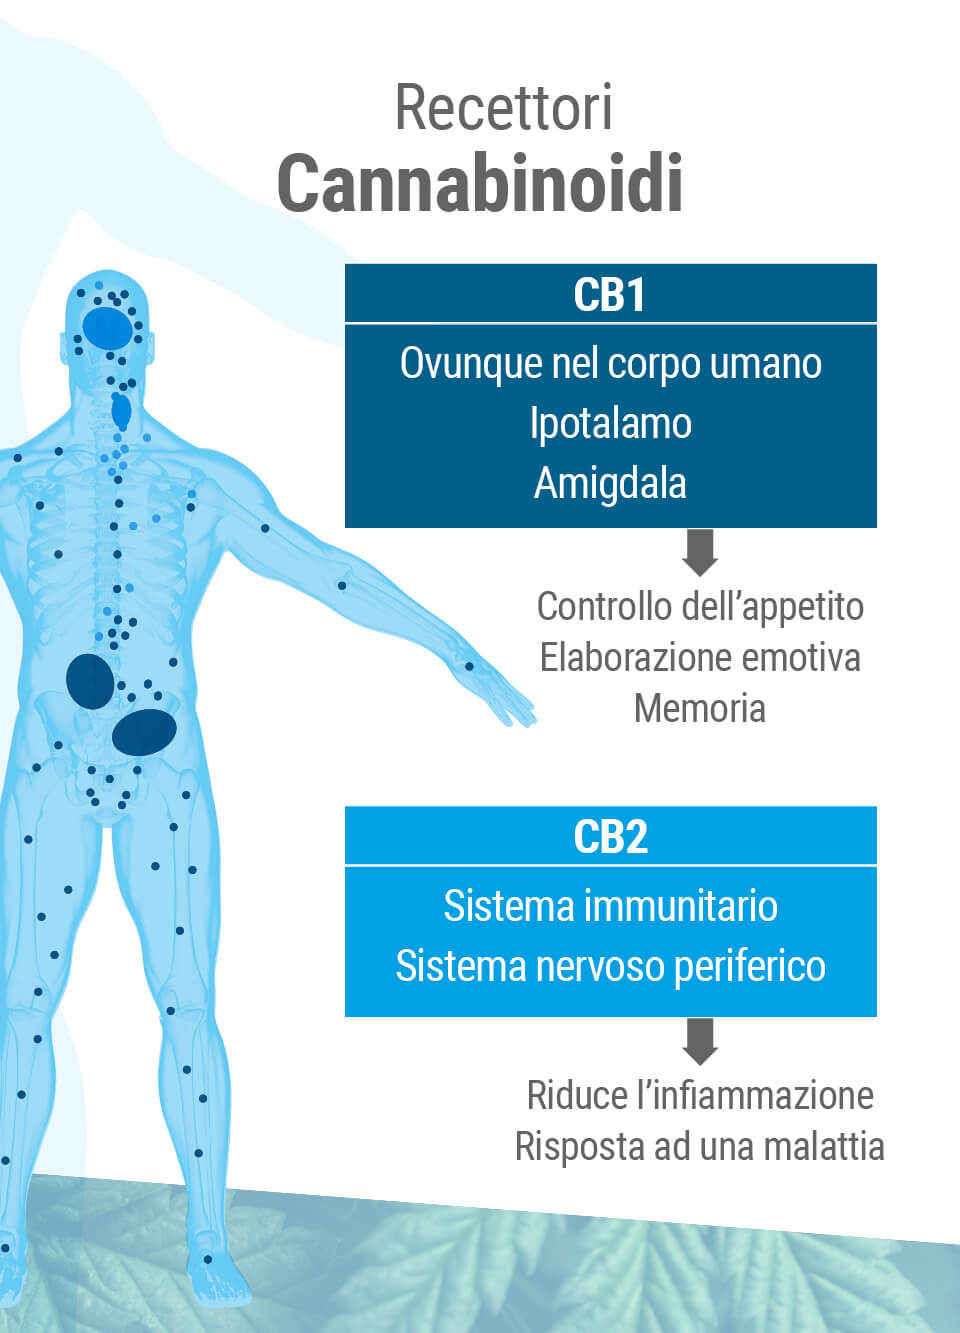 Il sistema endocannabinoide presenta due tipi principali di recettori: CB1 e CB2